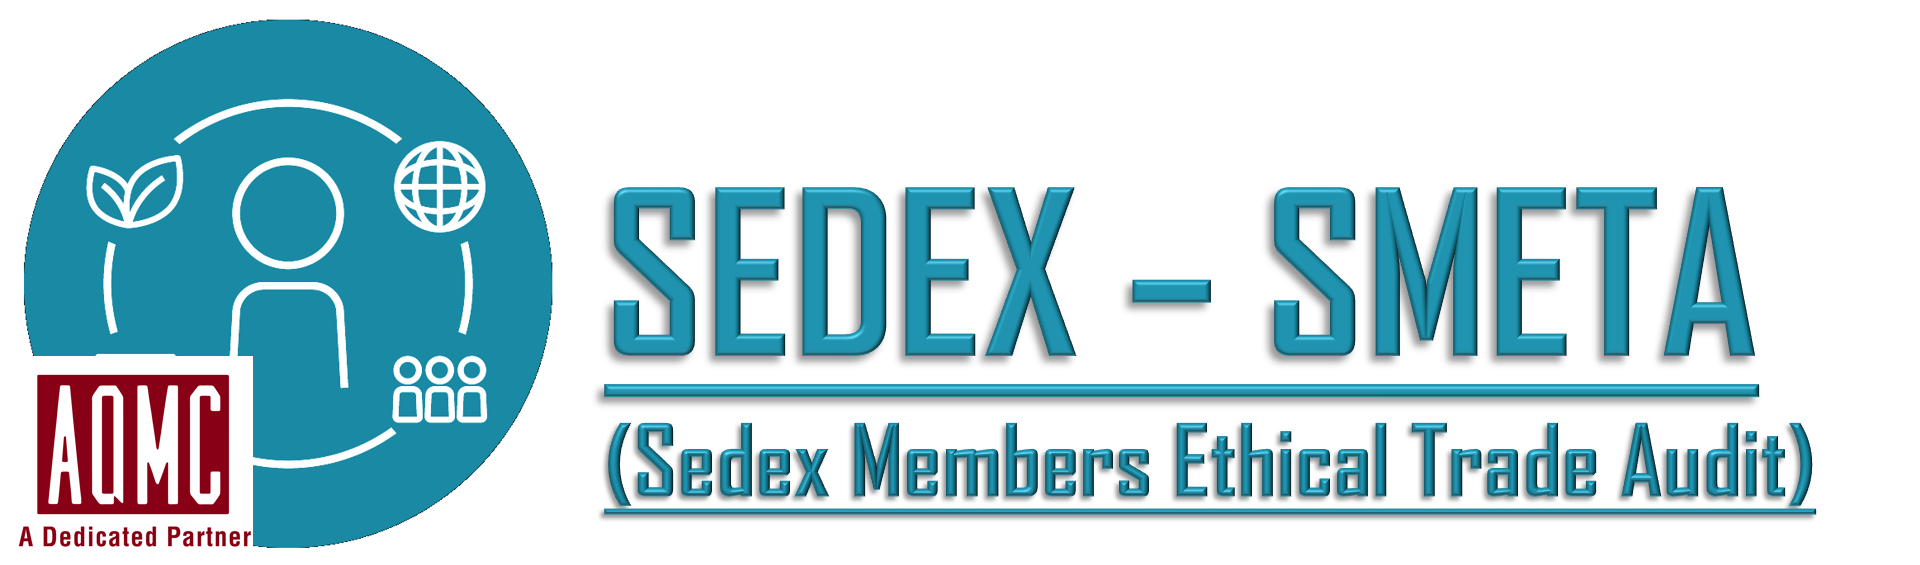 SMETA: Hệ thống đánh giá về đạo đức và TNXH của Sedex